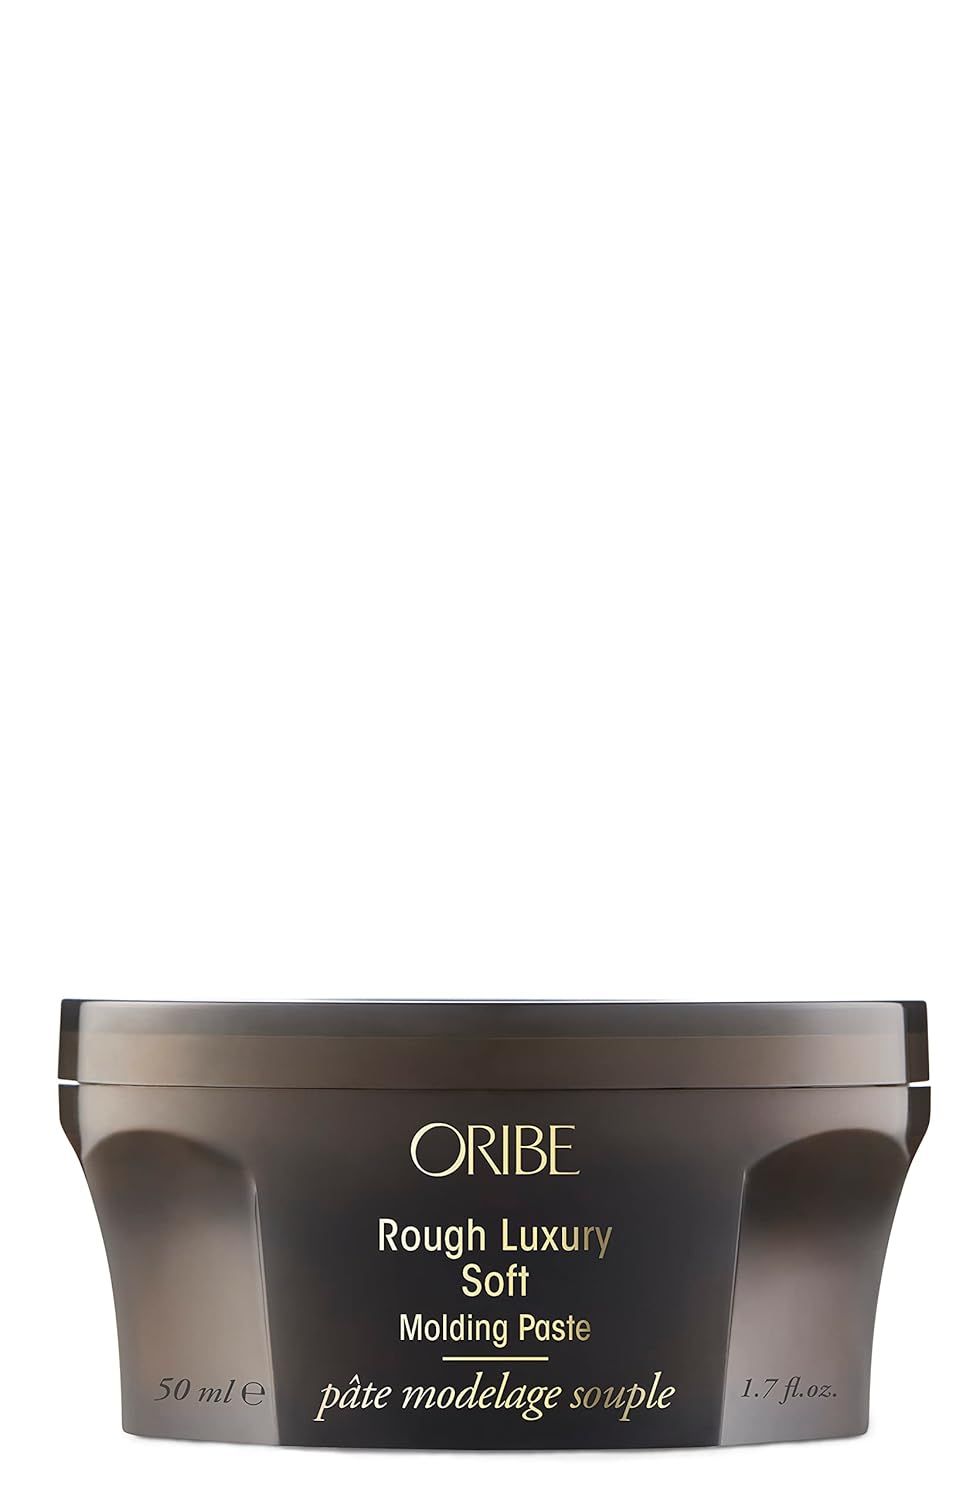 Oribe Rough Luxury Soft Molding Paste 1.7 Fl Oz (Pack of 1) | Amazon (US)